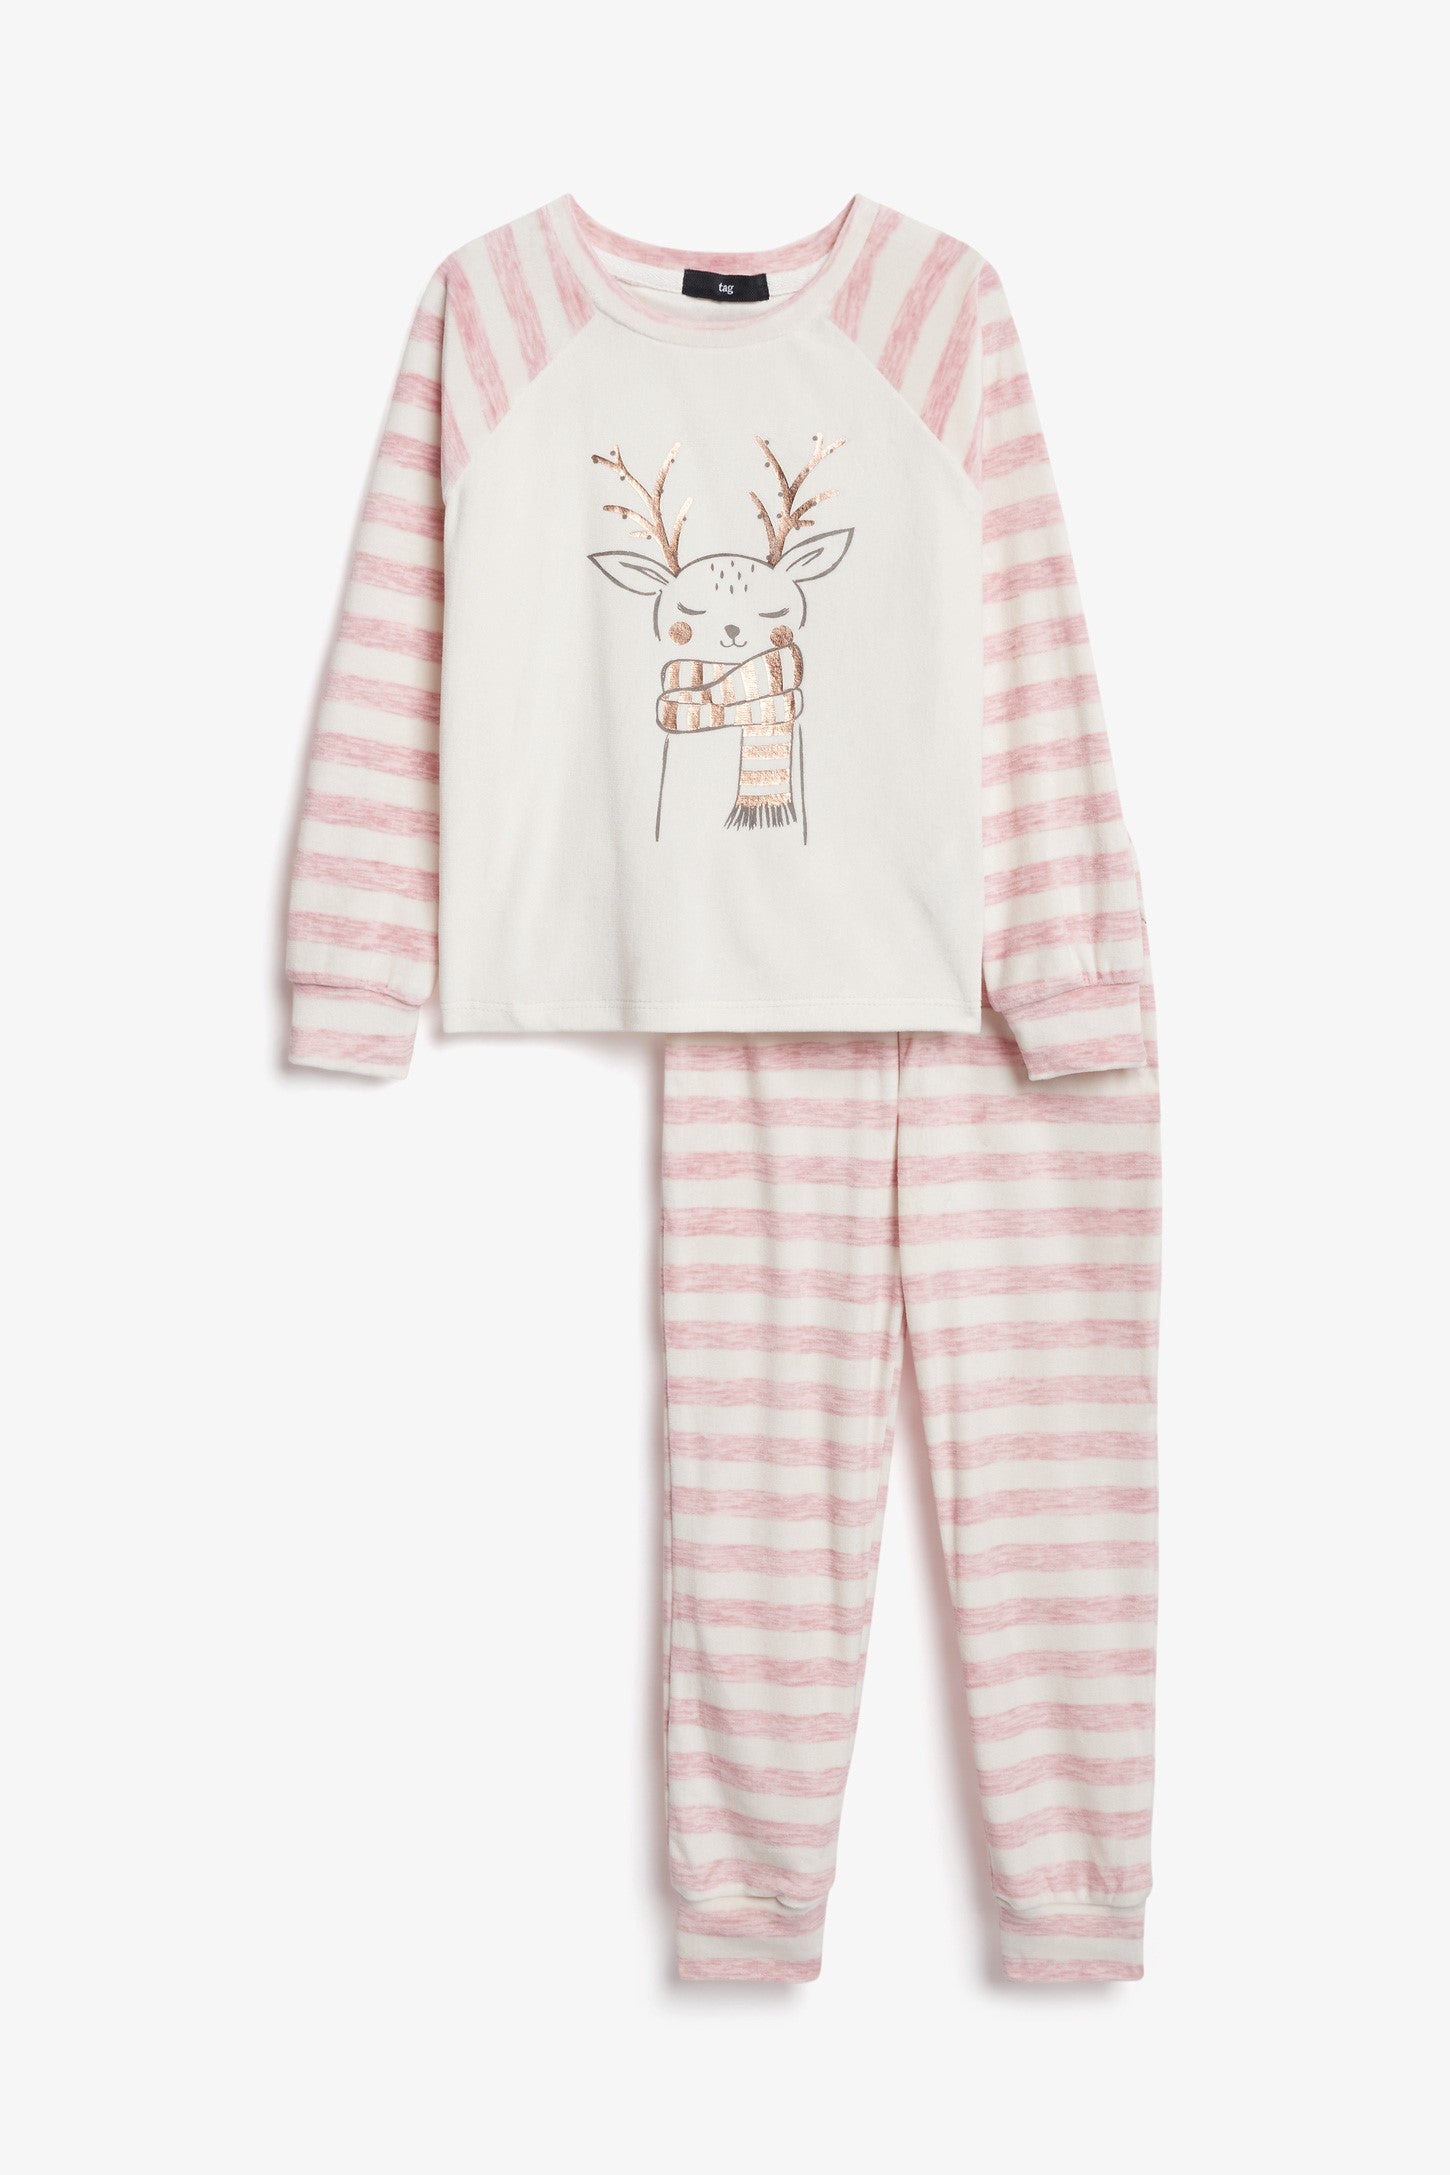 Pyjama 2-pièces en micro velours - Enfant fille && ROSE PALE